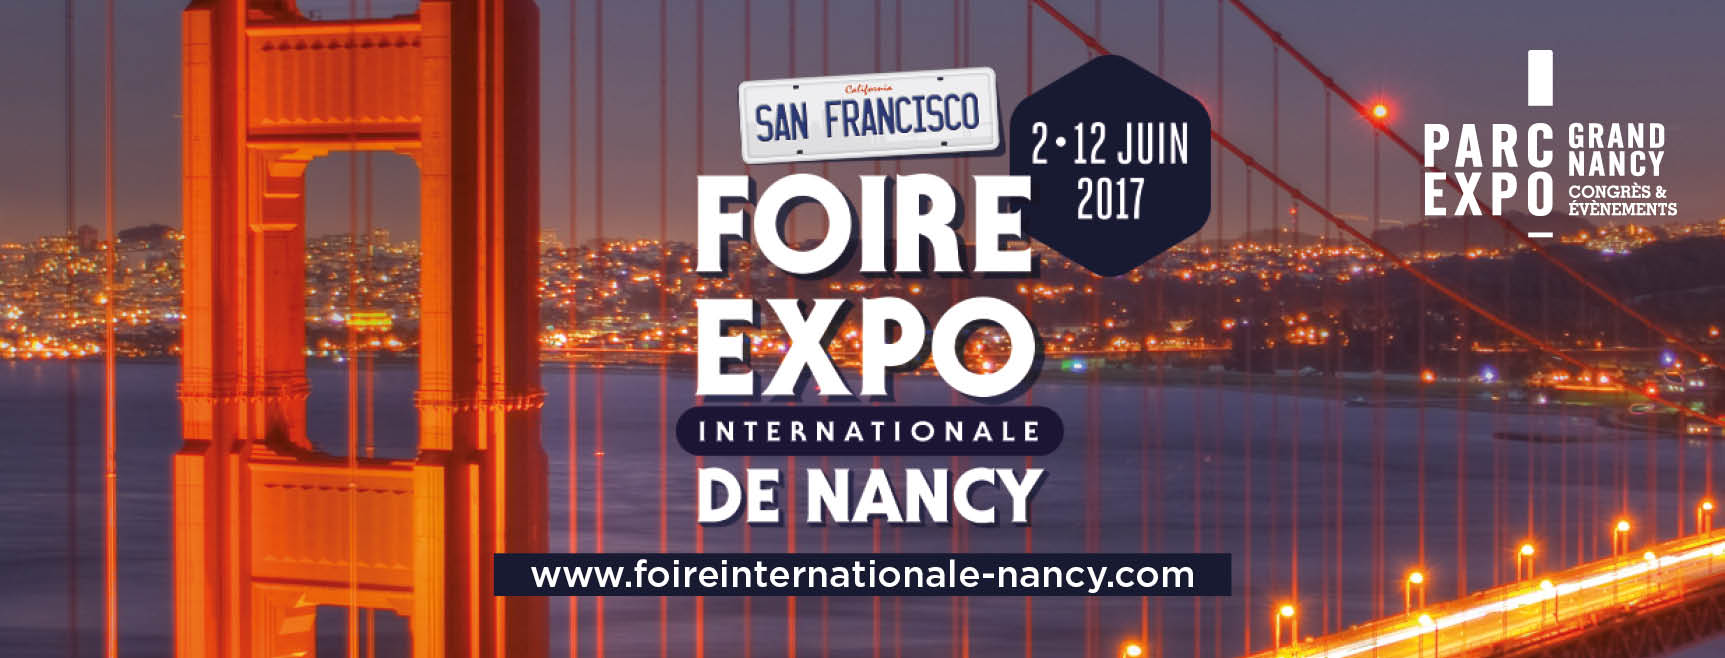 Foire internationale de Nancy 2017